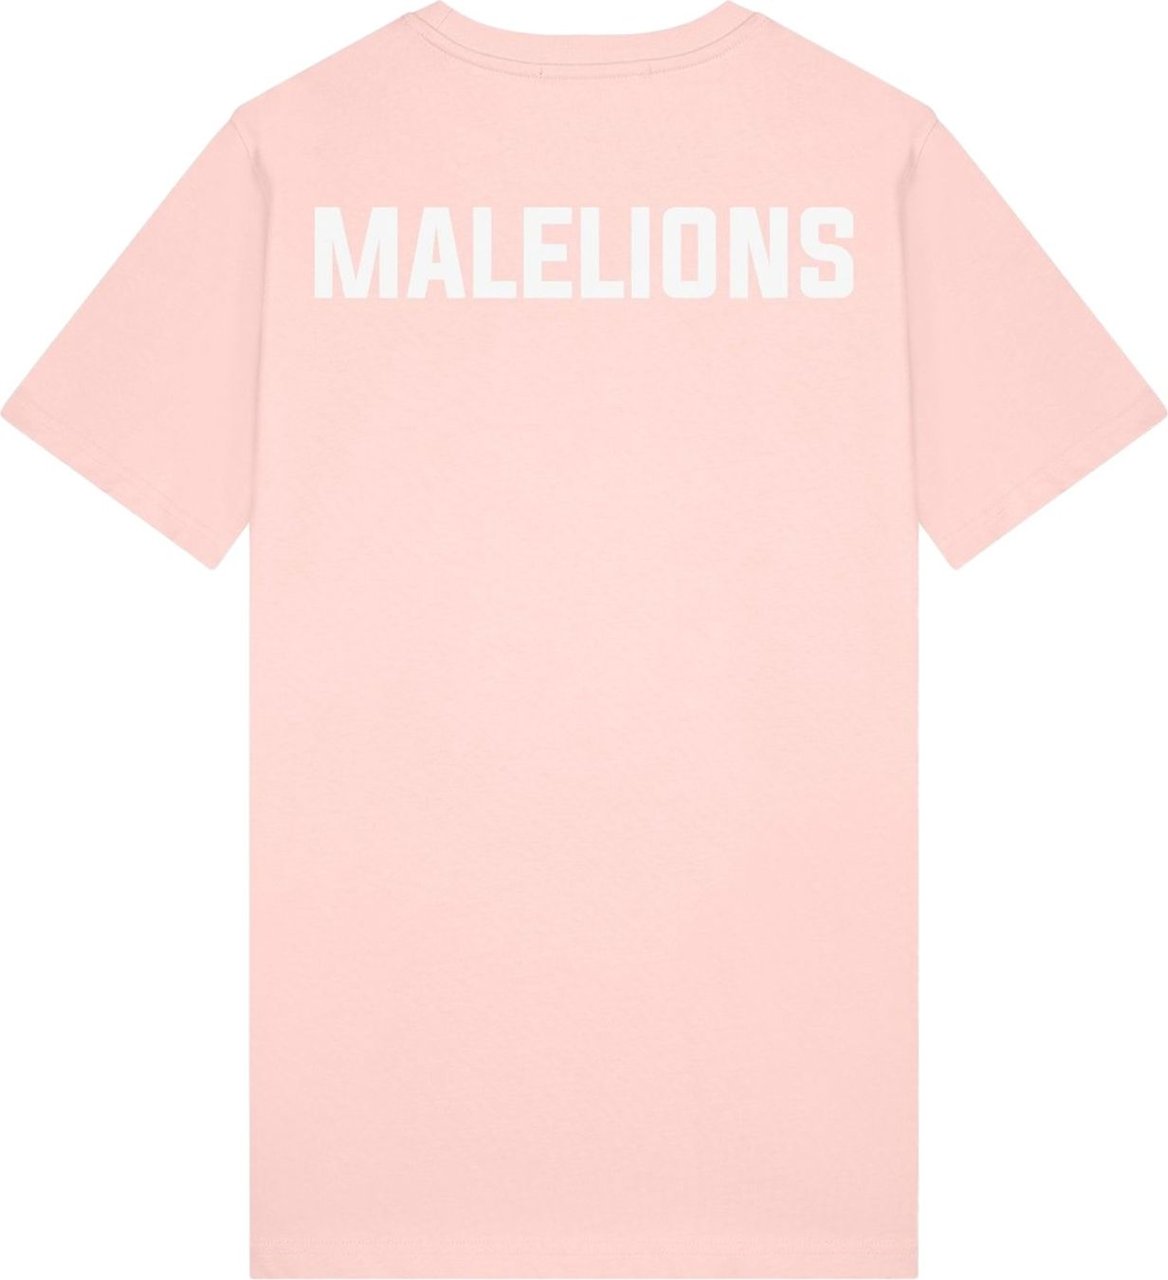 Malelions Logo T-Shirt 2- Light Pink Roze